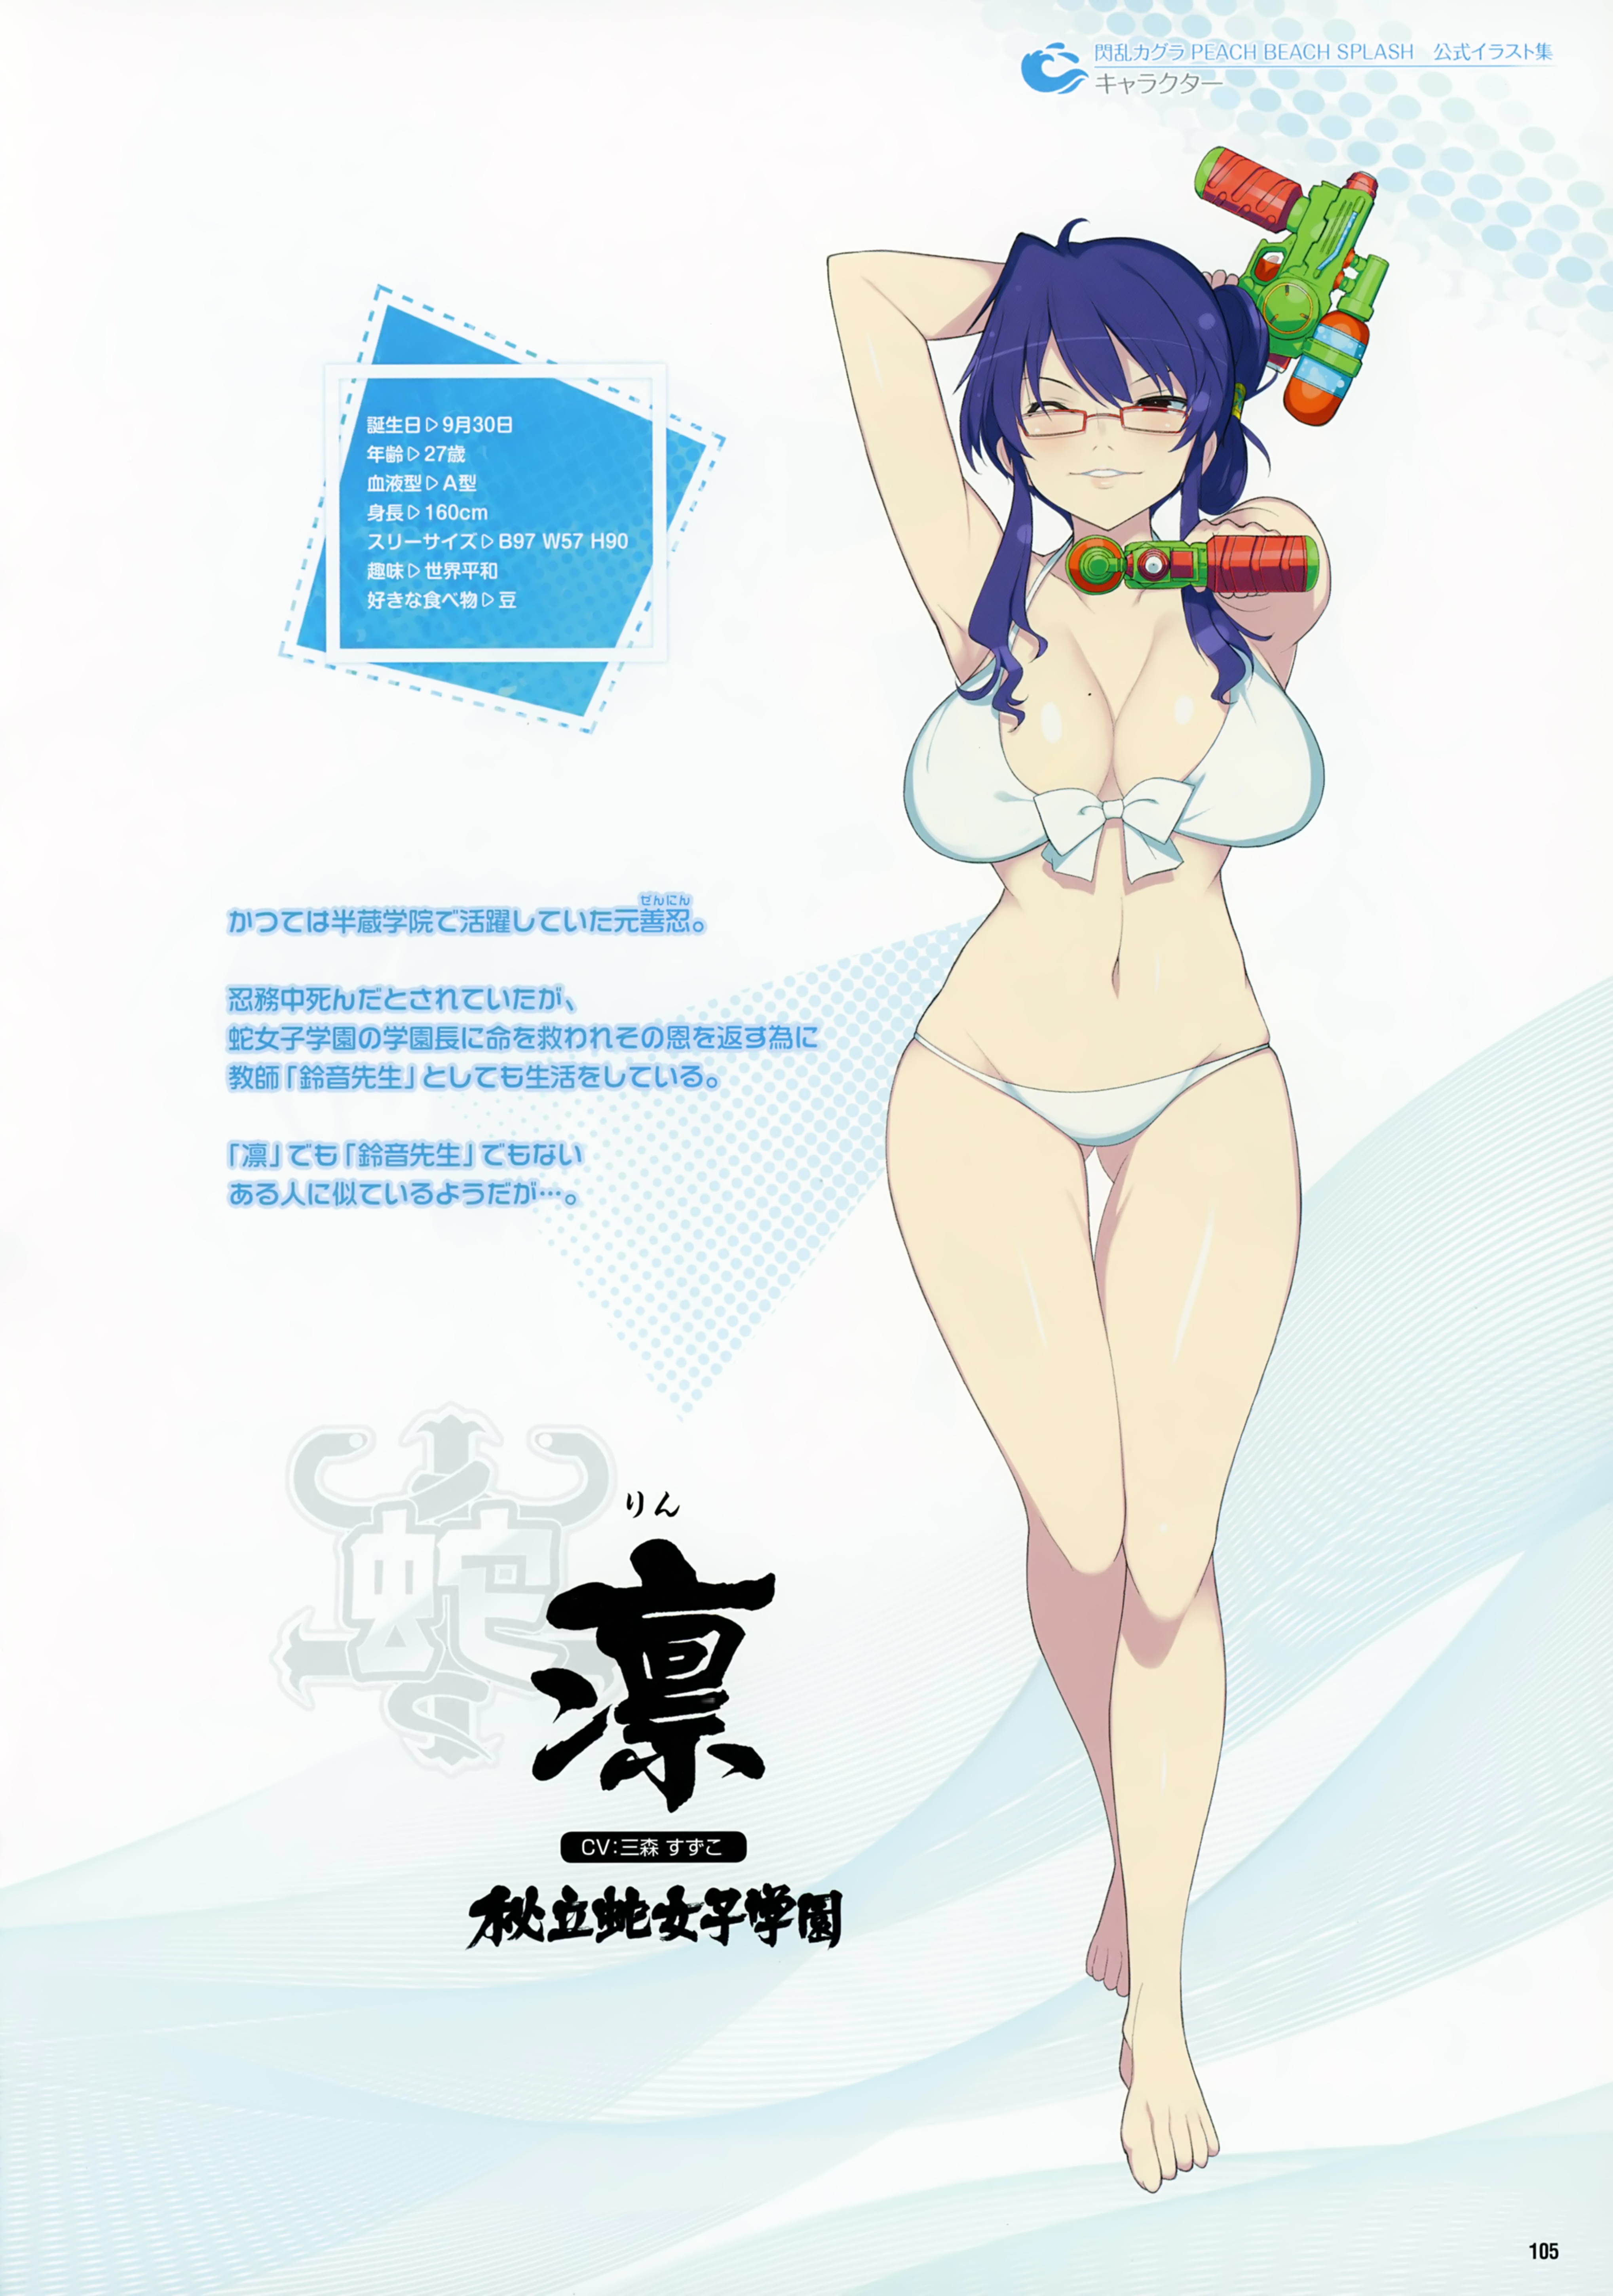 Yaegashi Nan Senran Kagura Peach Beach Splash Rin Senran Kagura Bikini Cleavage Gun Profile Page Swimsuits Yande Re